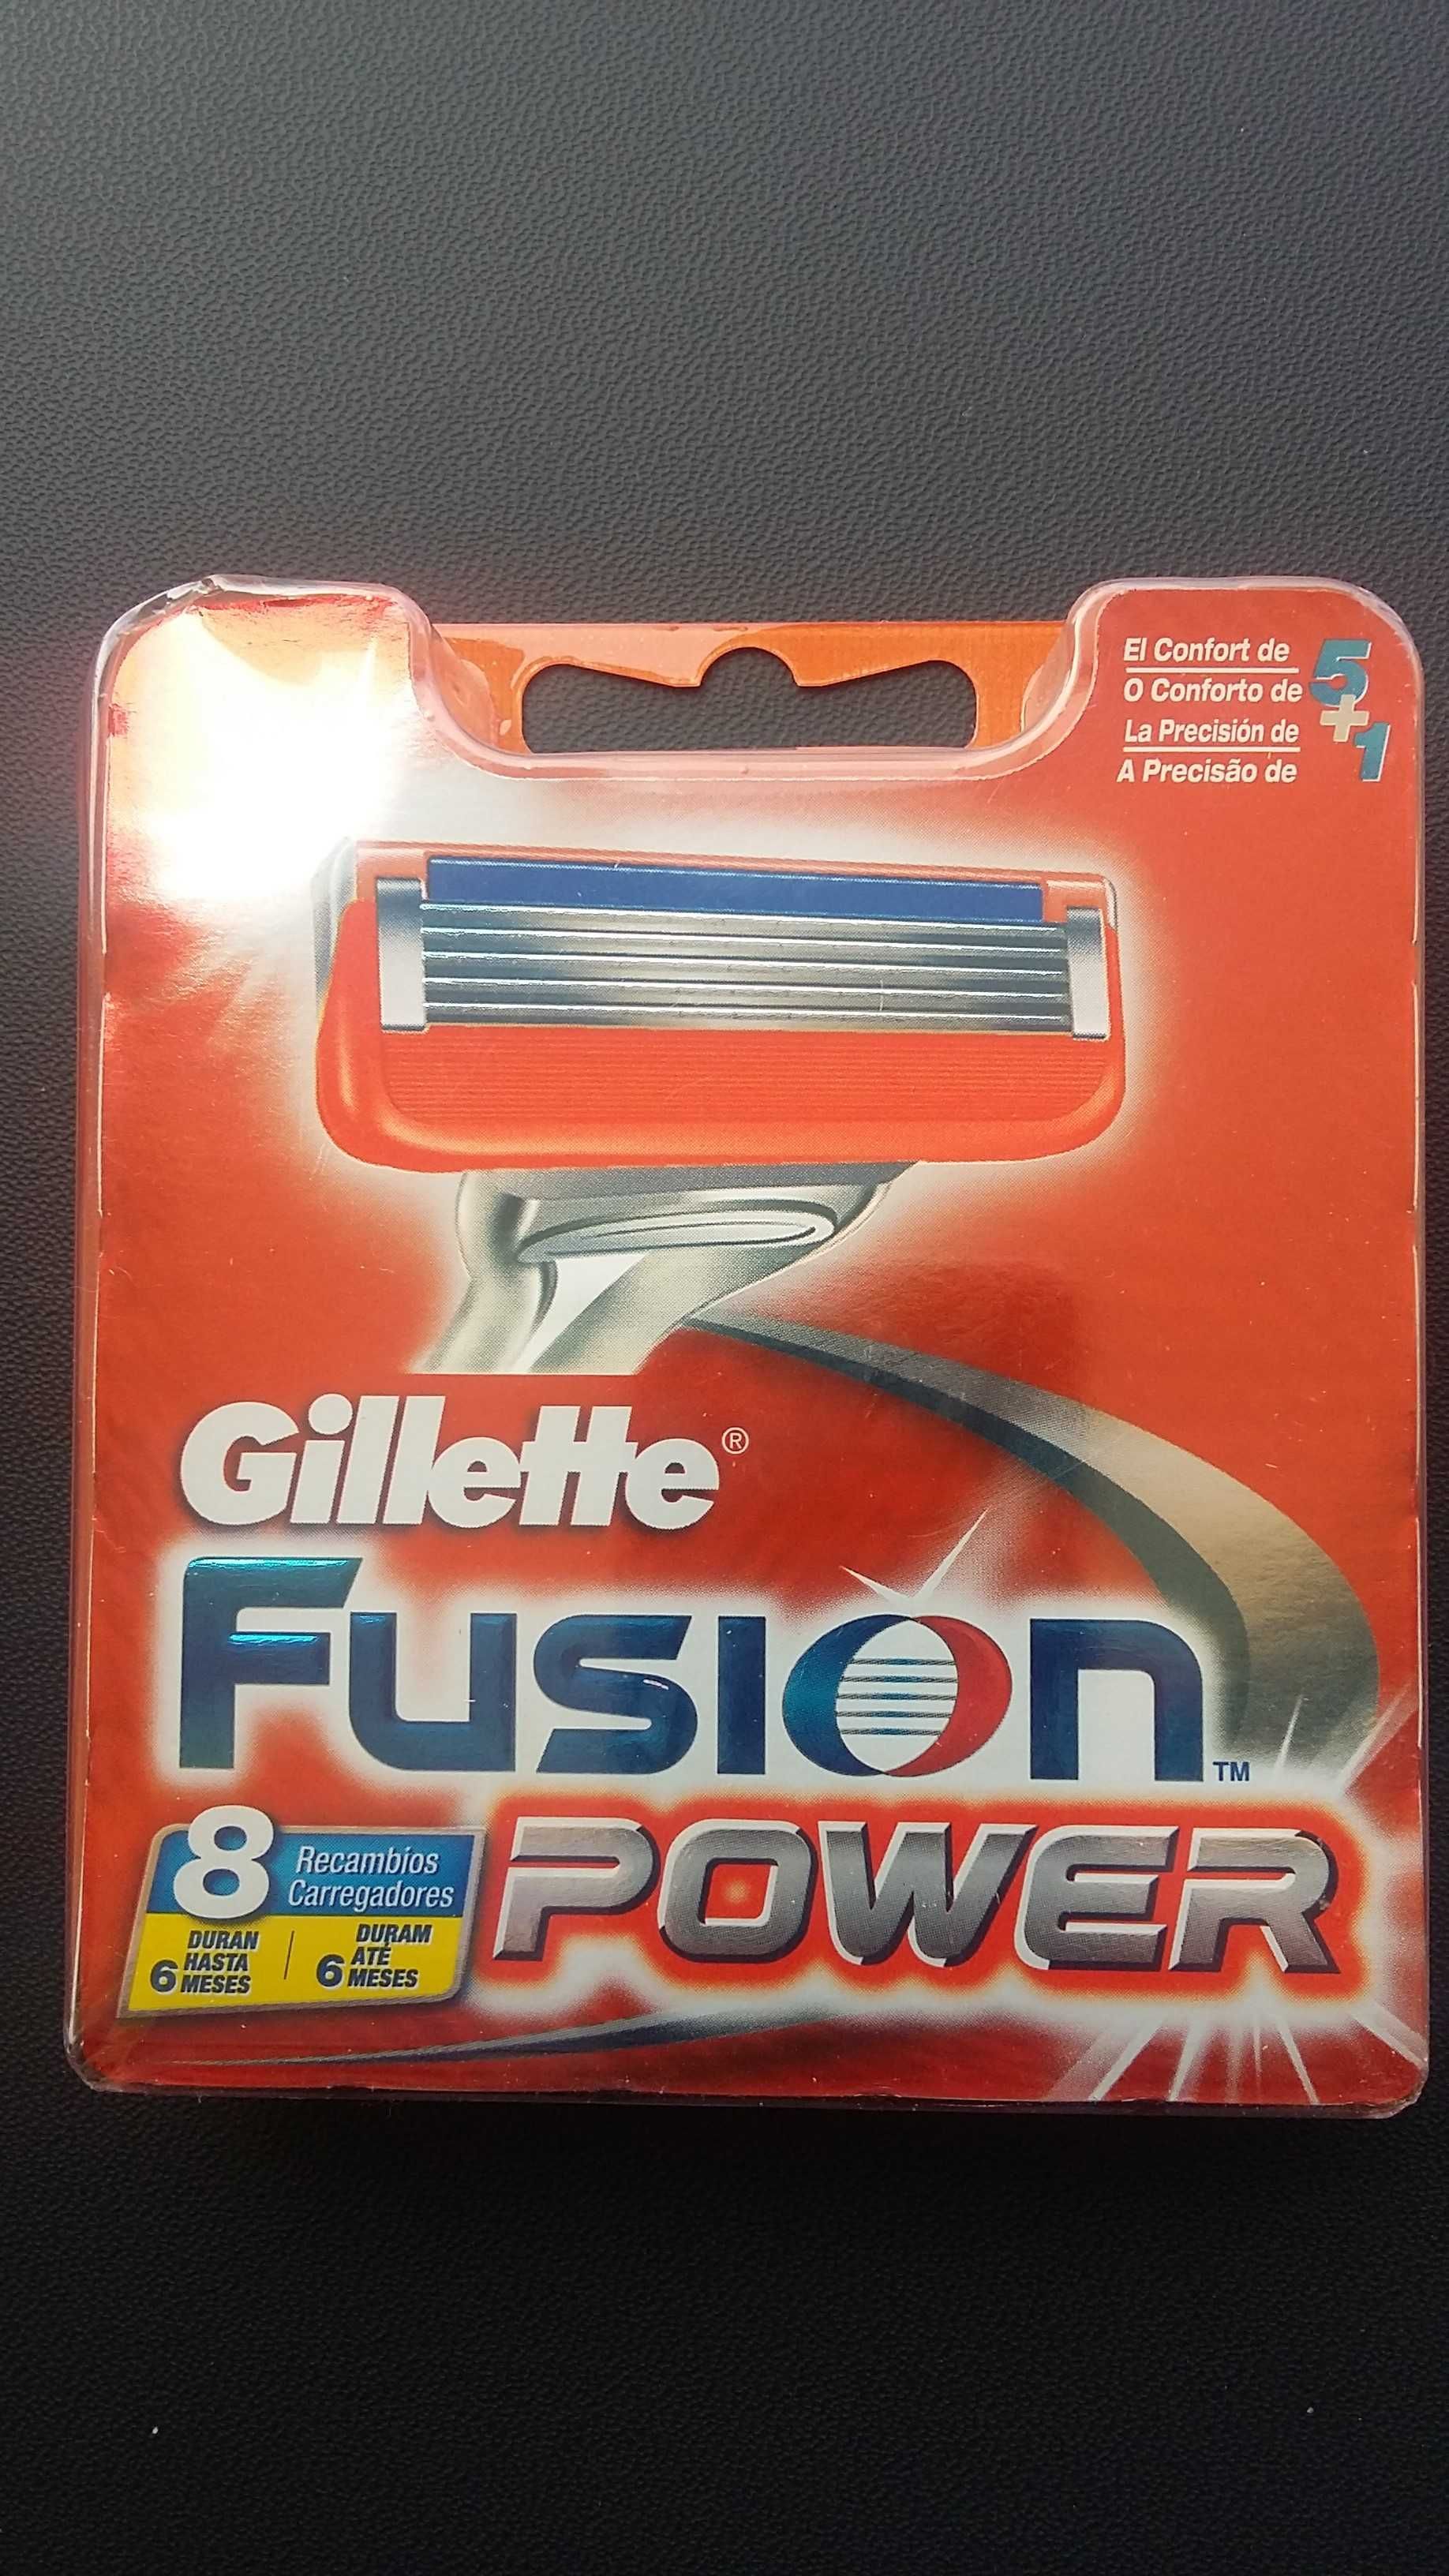 Carregador Fusion Power 8 Recargas
Gillette